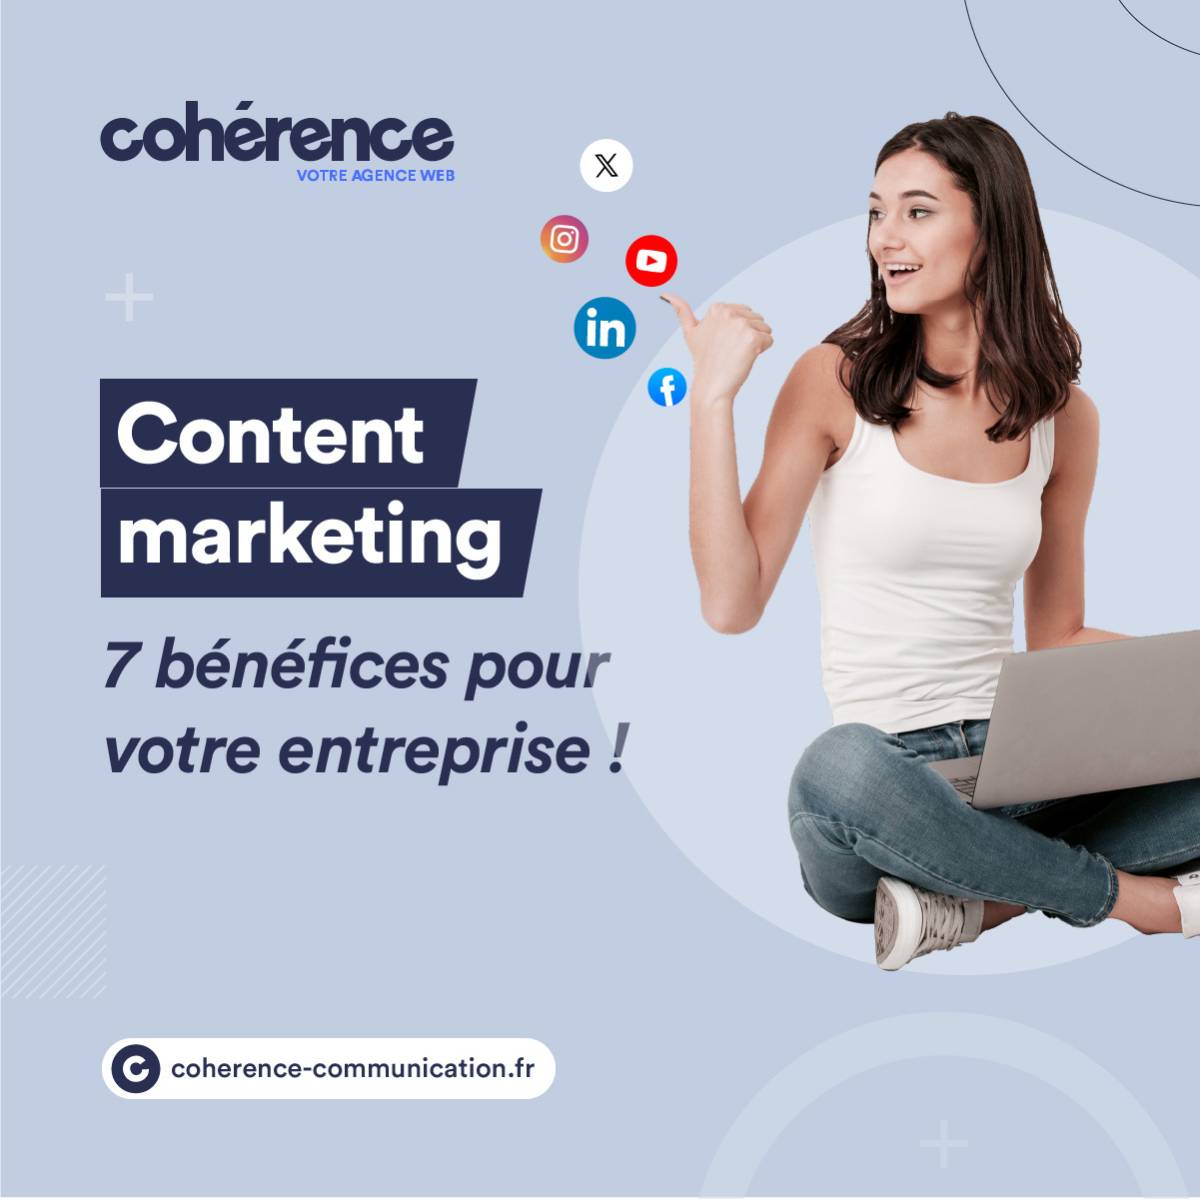 Coherence Agence Web Content Marketing 7 Benefices Pour Votre Entreprise